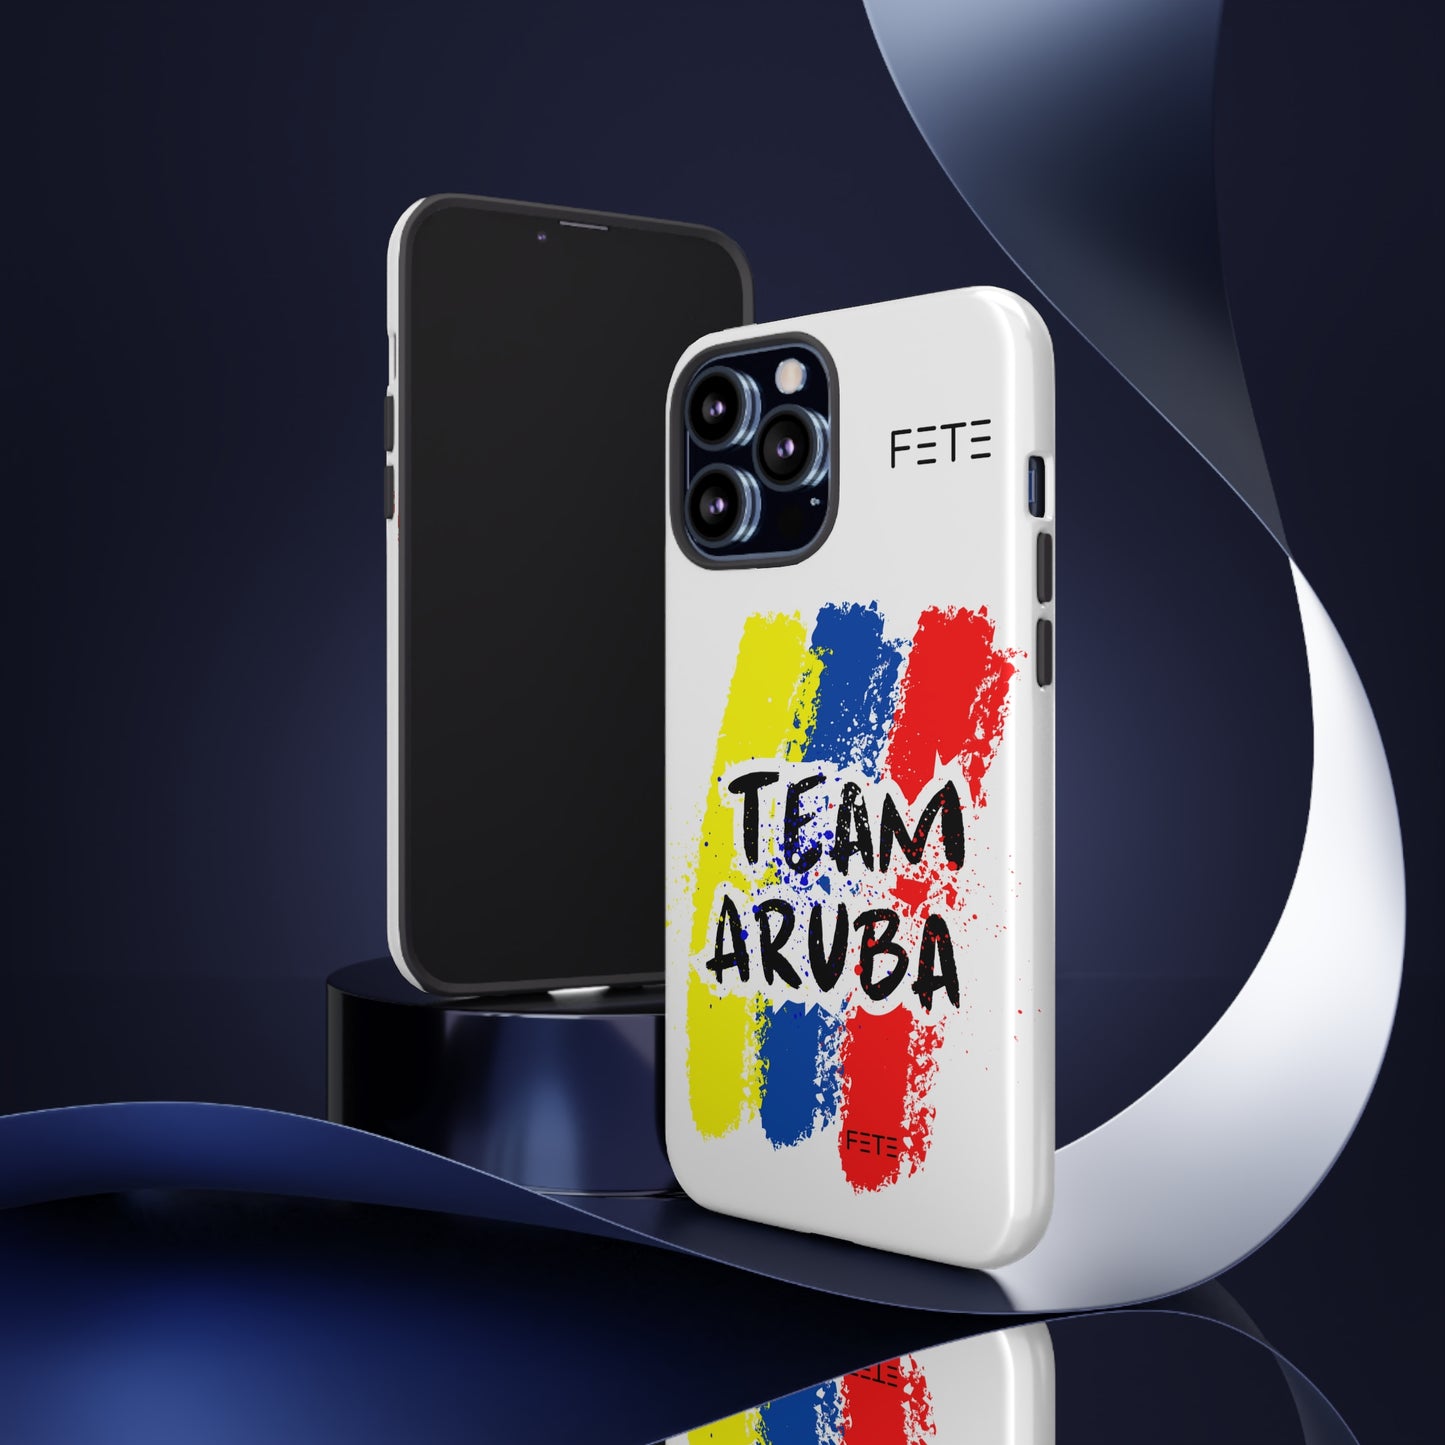 Team Aruba Tough Phone Case